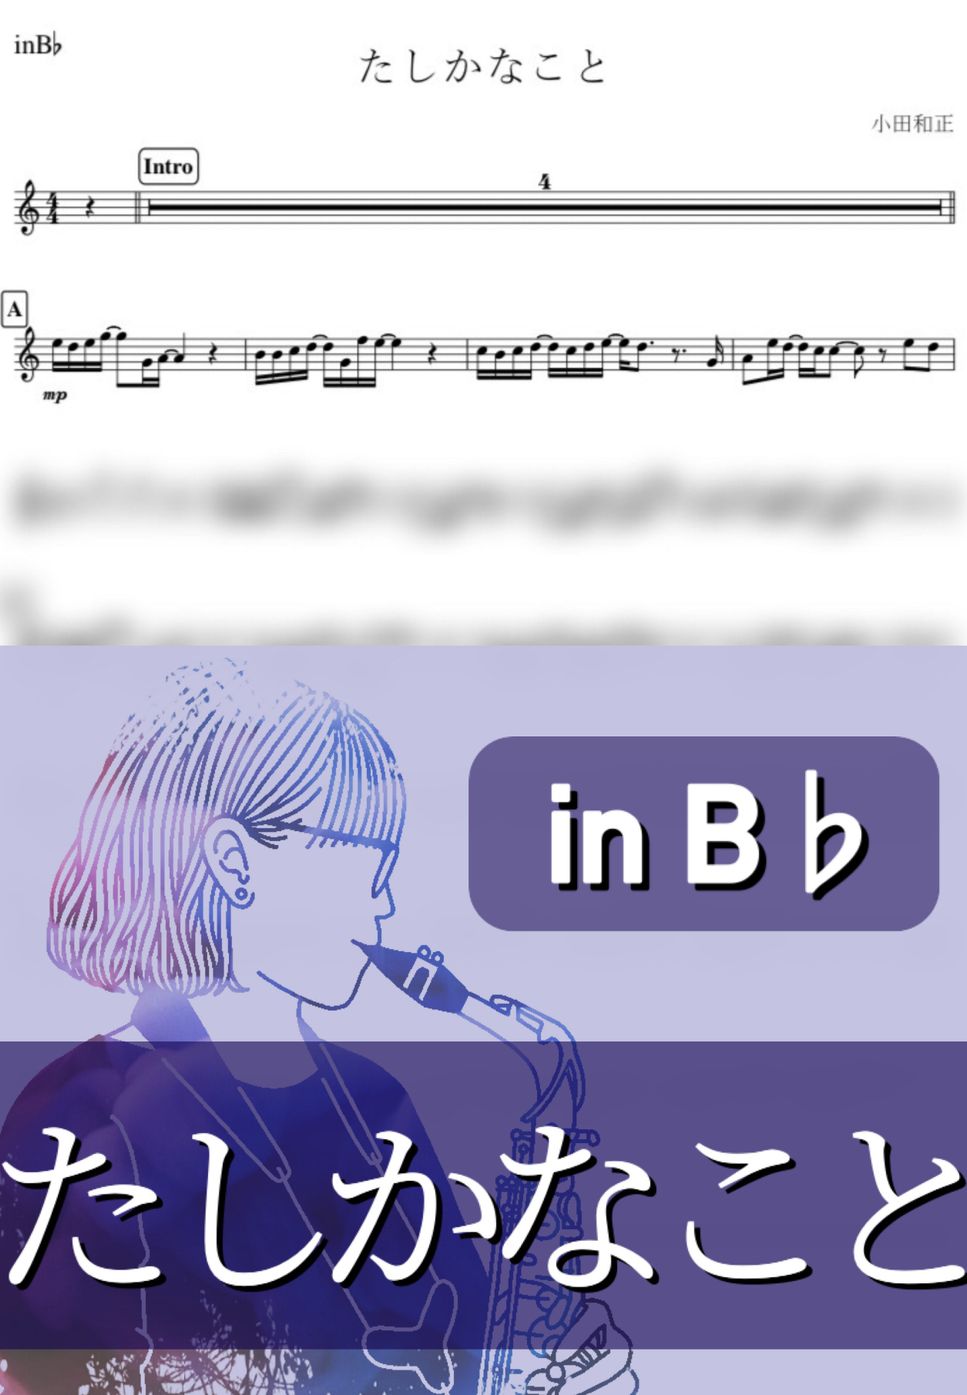 小田和正 - たしかなこと (B♭) by kanamusic